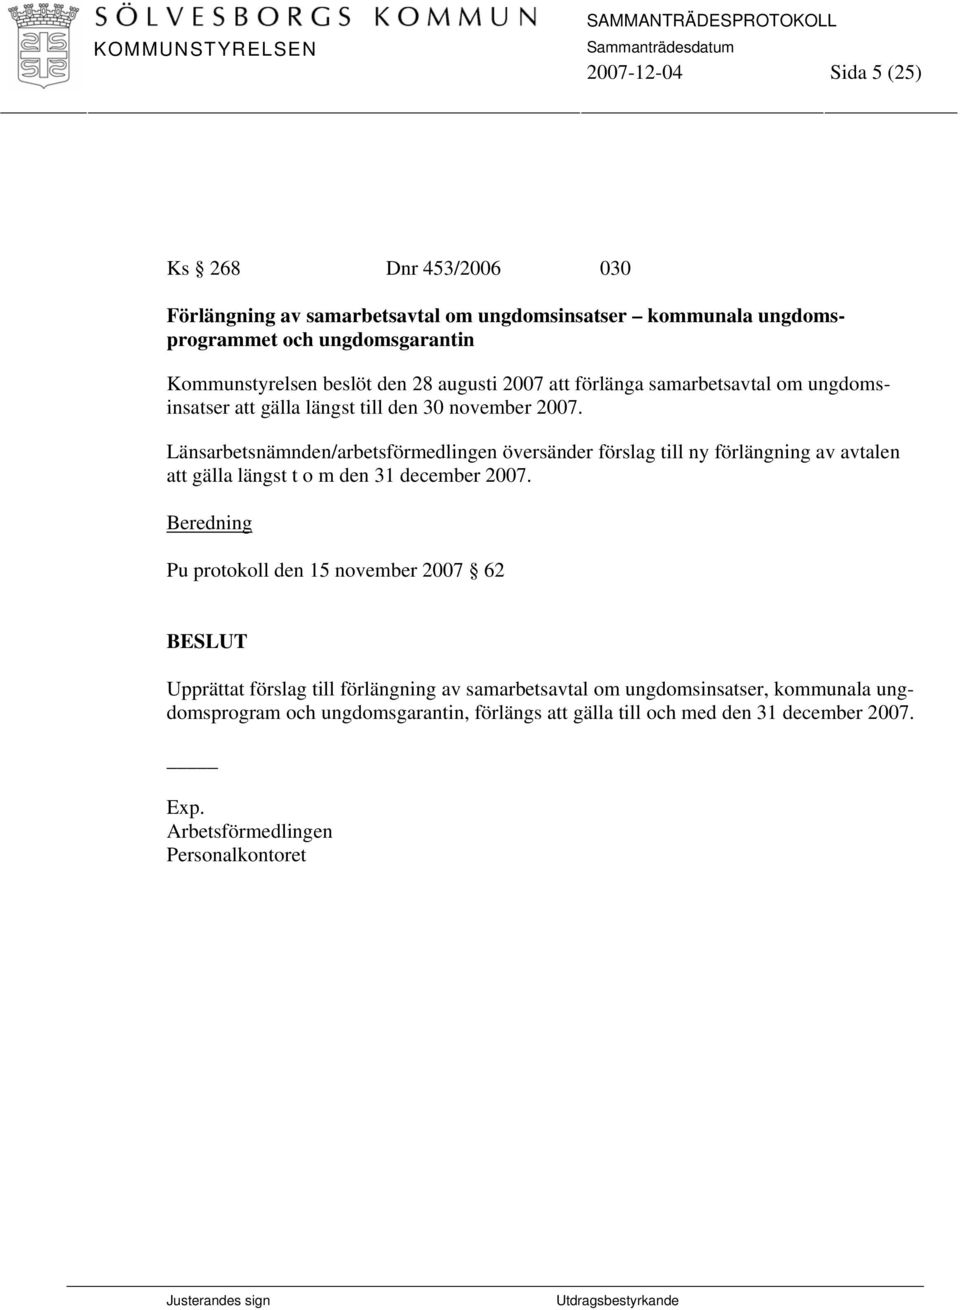 Länsarbetsnämnden/arbetsförmedlingen översänder förslag till ny förlängning av avtalen att gälla längst t o m den 31 december 2007.